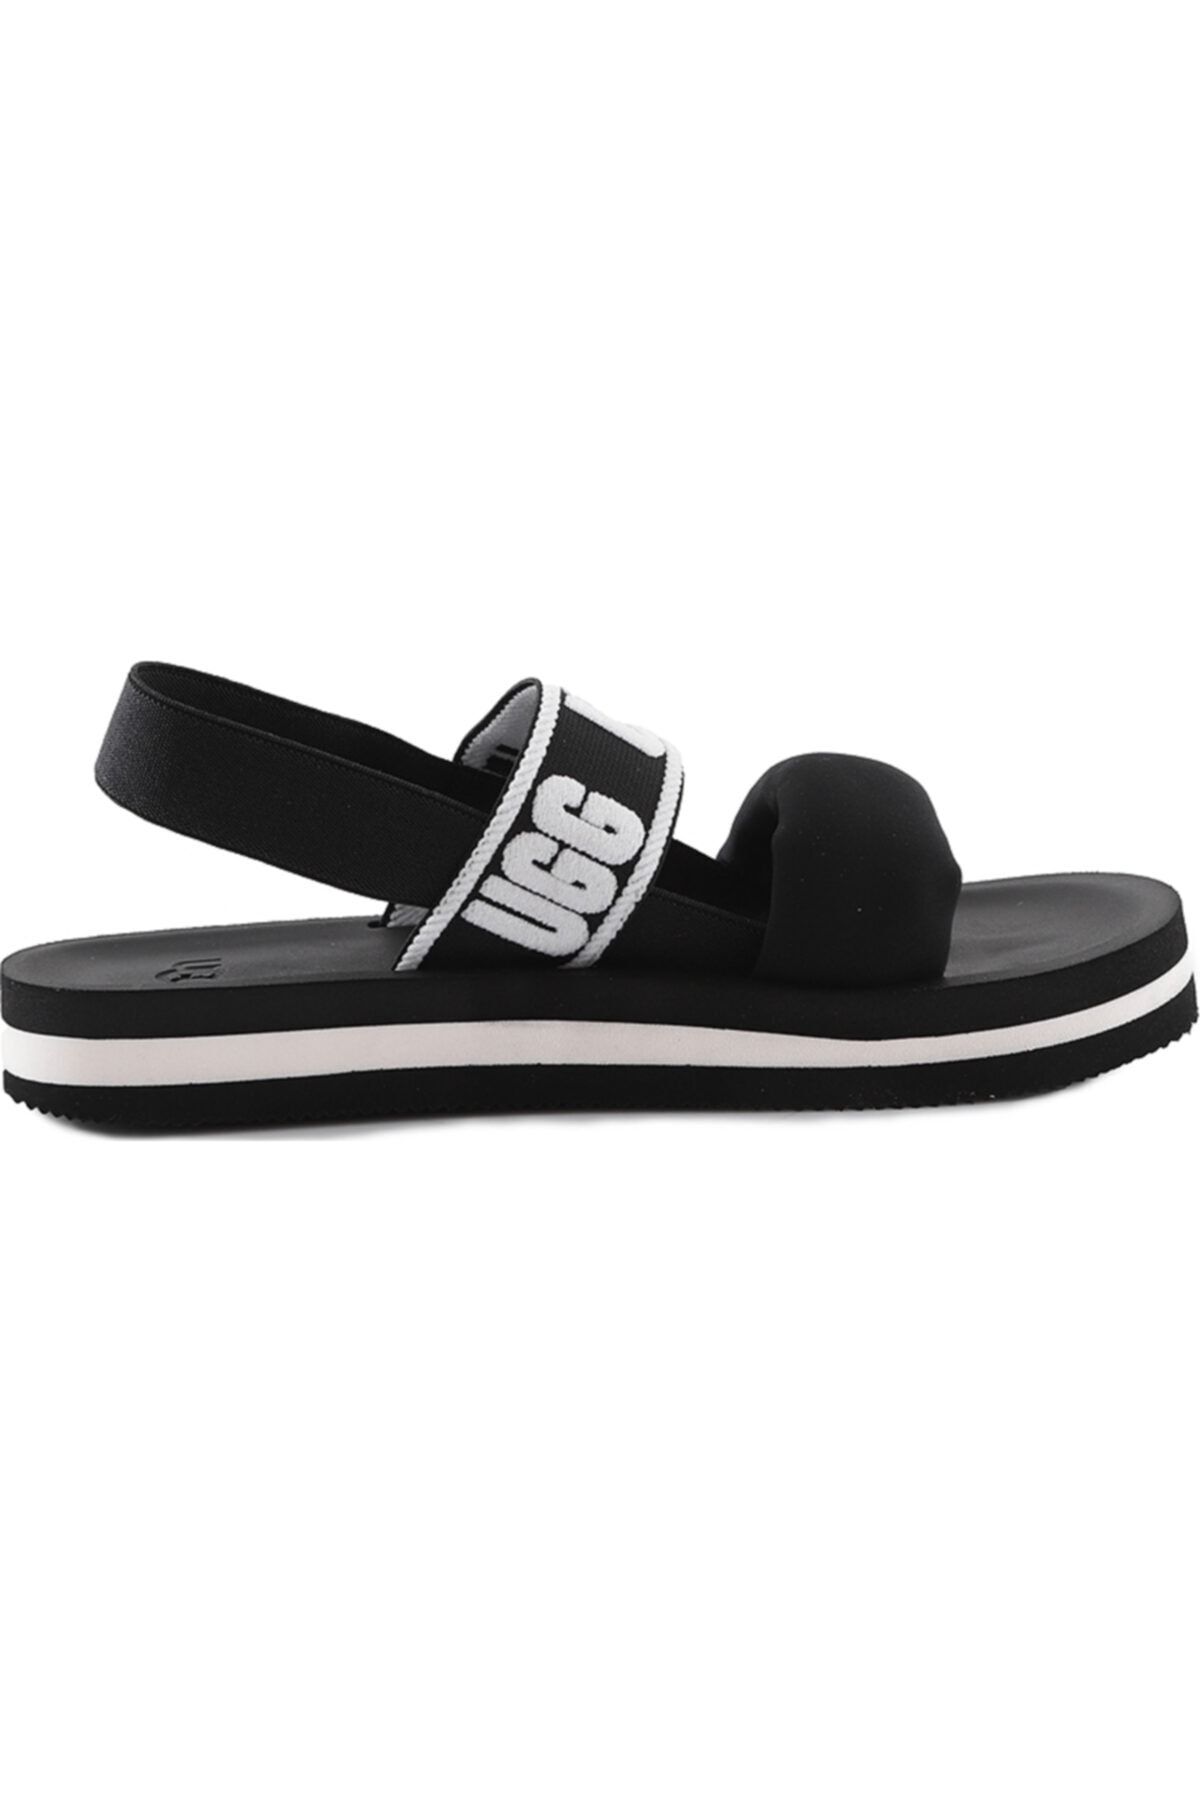 UGG Kadın Siyah Sandalet 1107893-blk